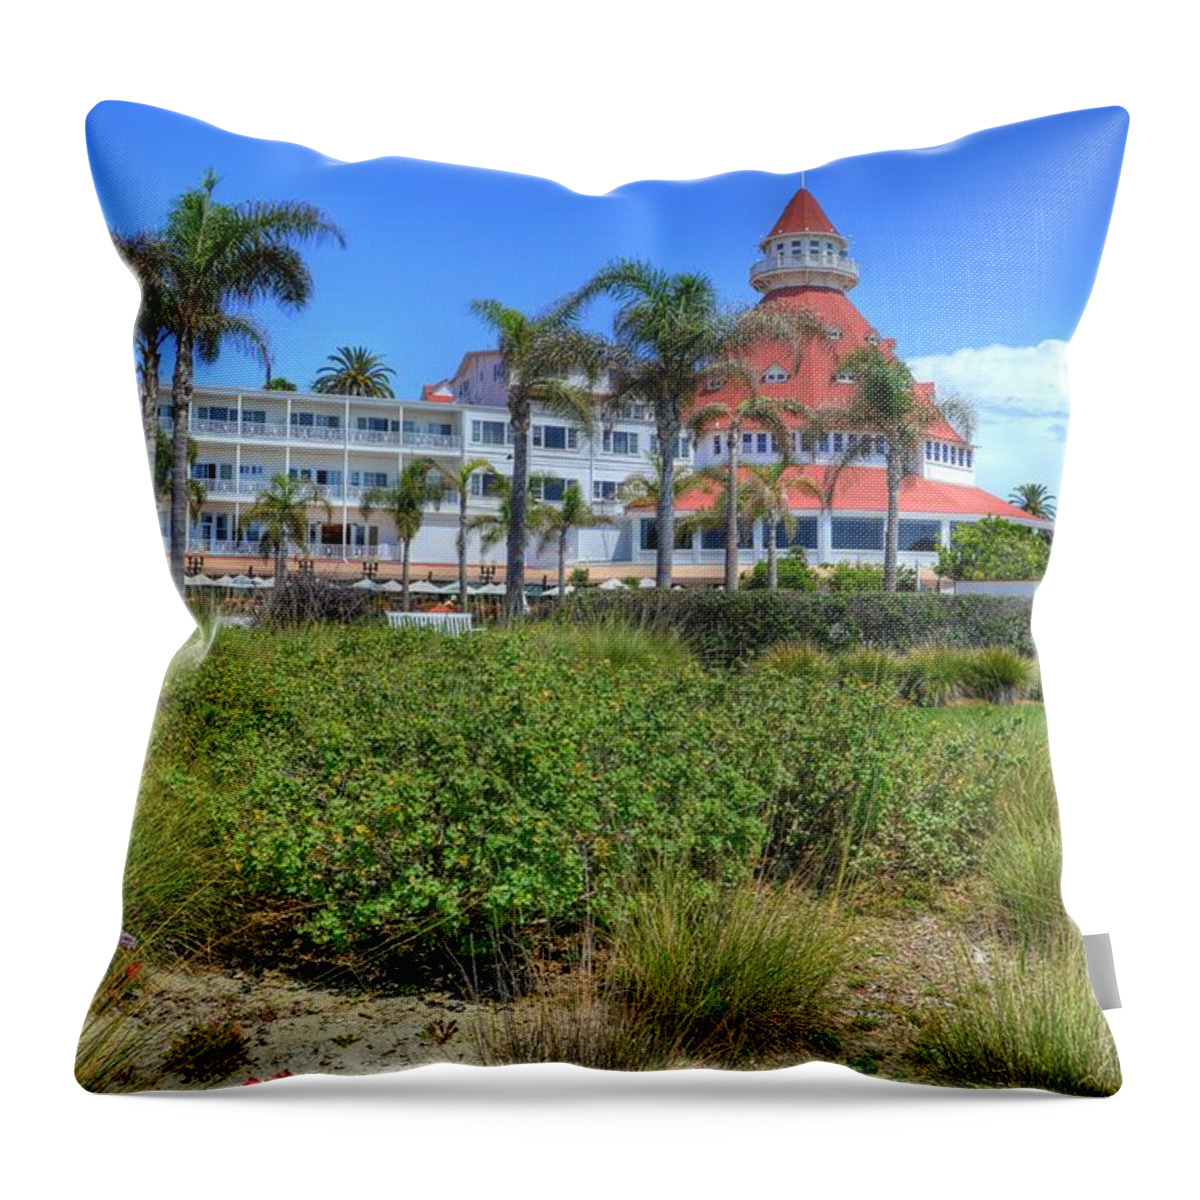 Hotel Del Coronado Throw Pillow featuring the photograph Hotel Del Coronado by Kelly Wade